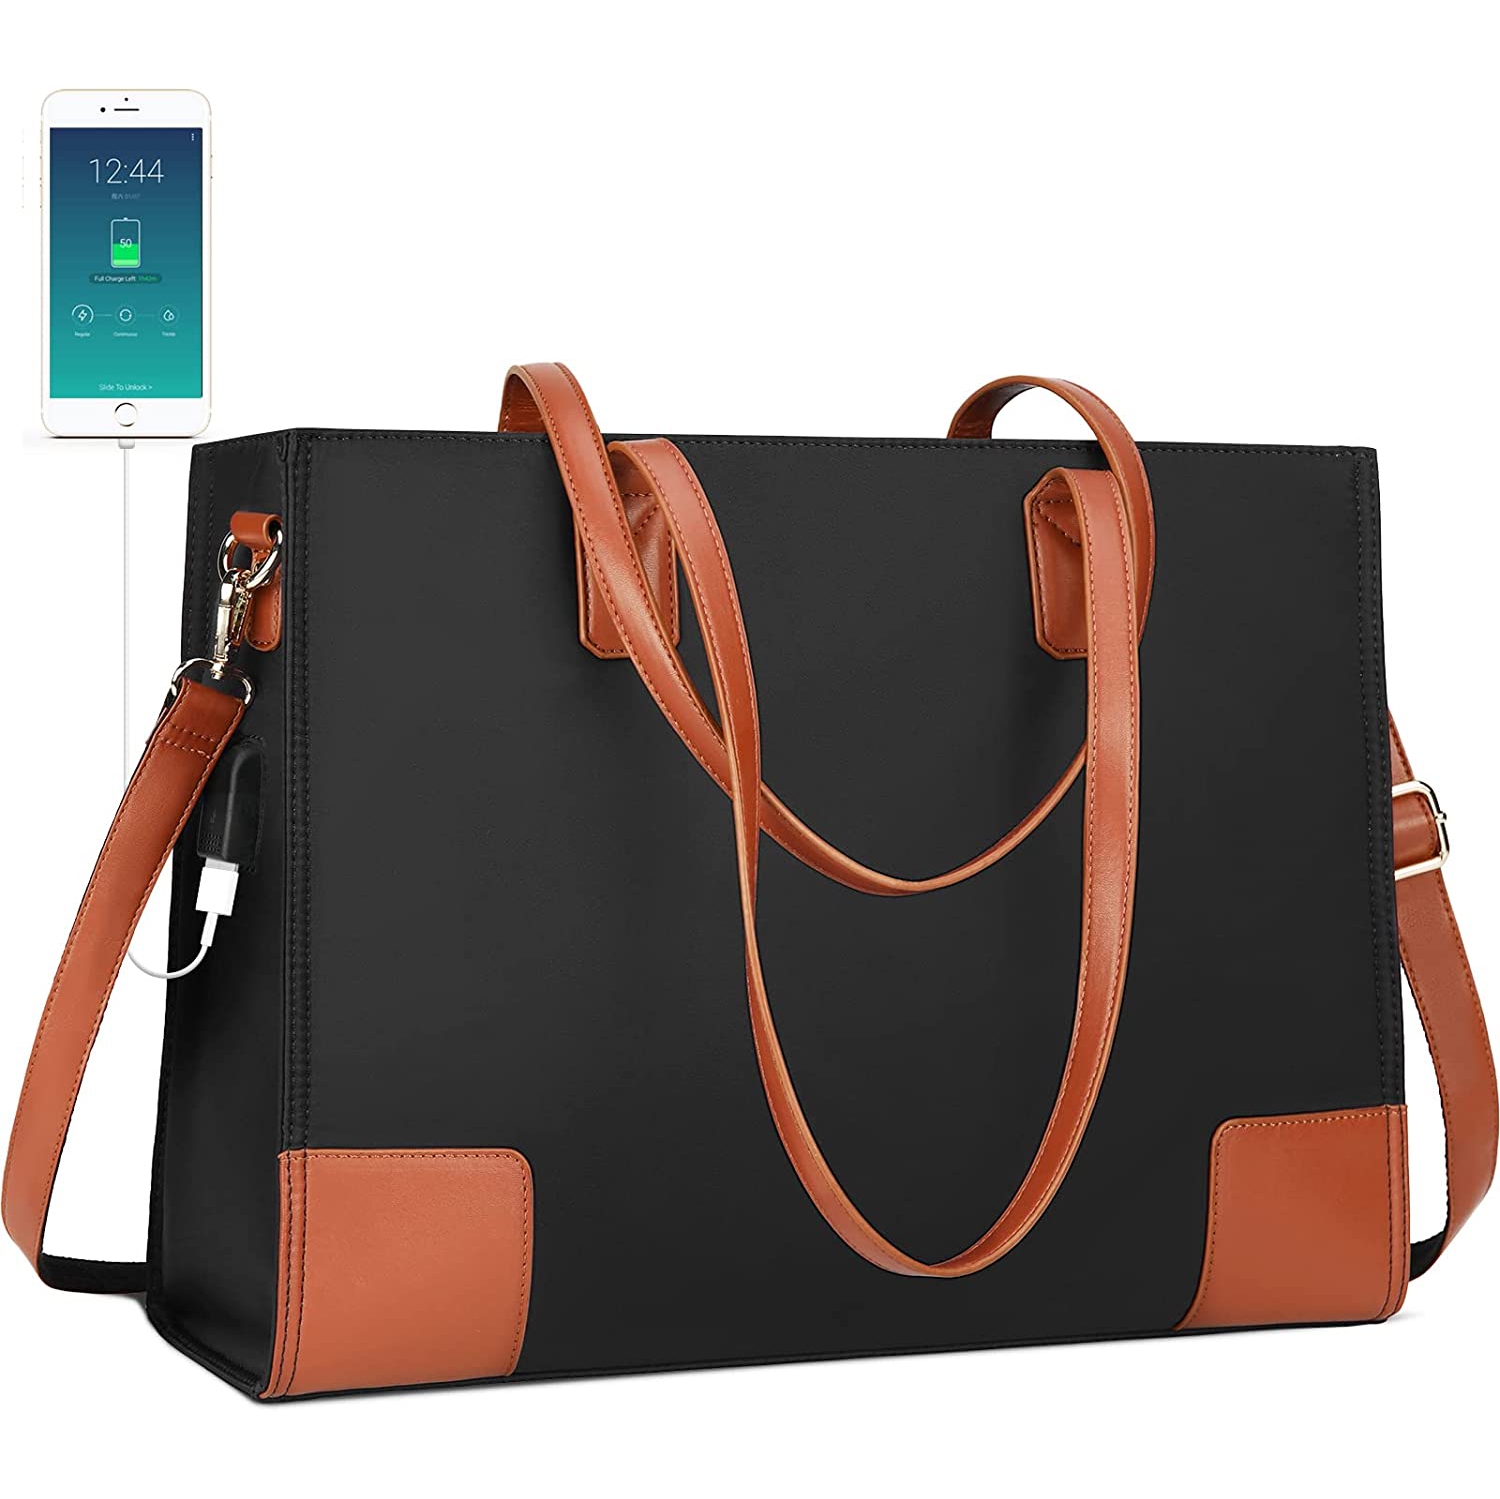 Laptop Tote Bag for Women 15.6 Inch Laptop Bag Large USB Teacher Bag Waterproof Lightweight Work Bag Nylon Shoulder Bag